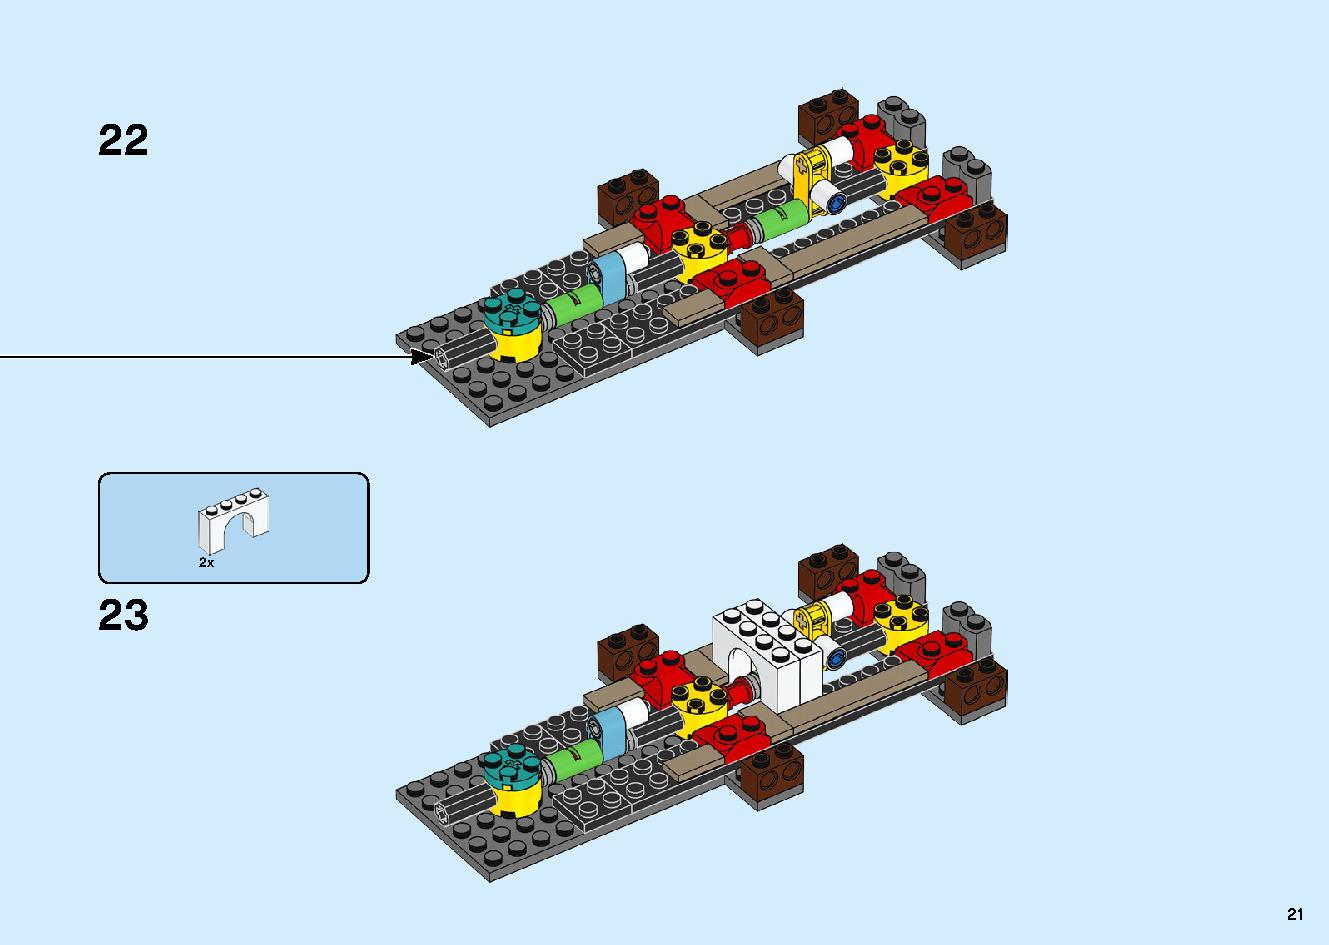 陸上戦艦バウンティ号 70677 レゴの商品情報 レゴの説明書・組立方法 21 page